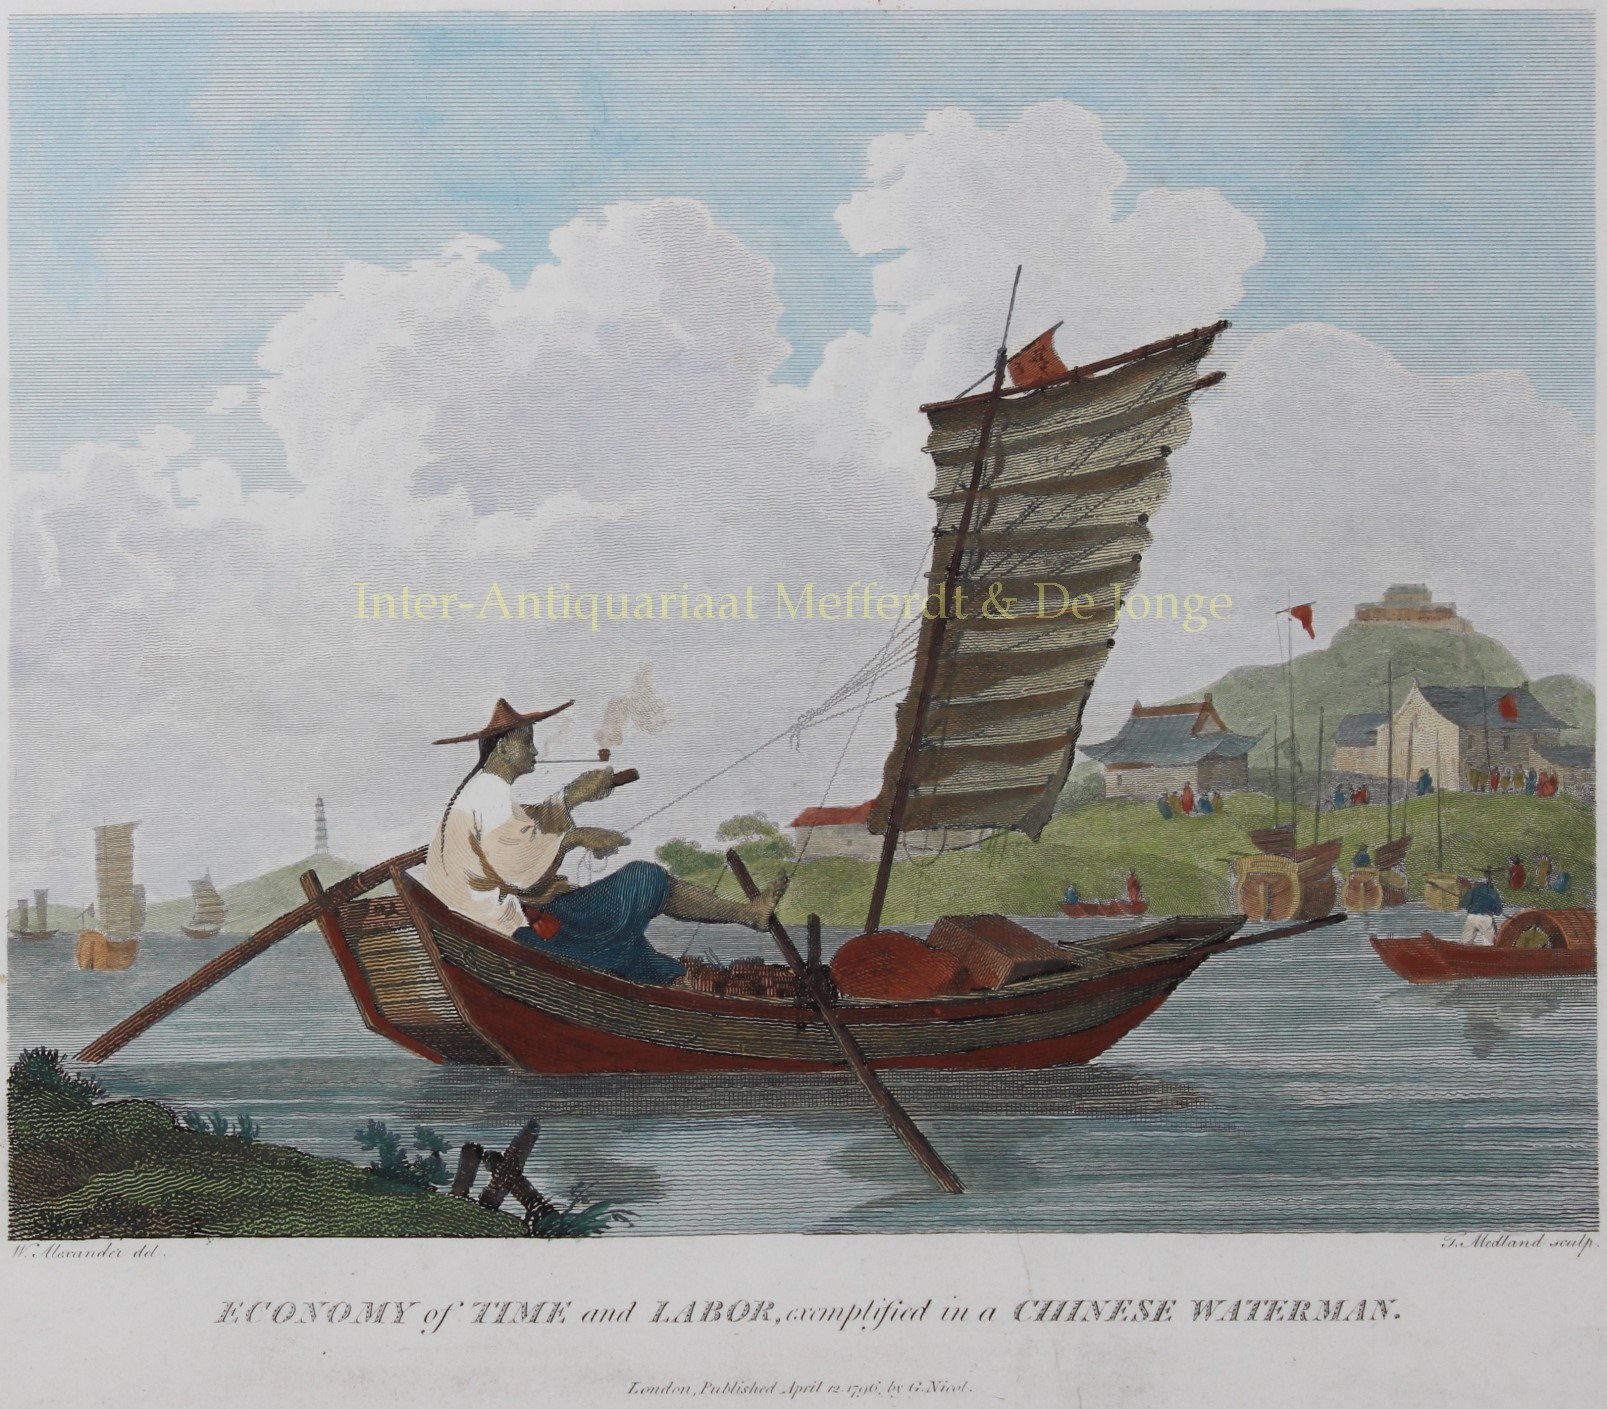 Alexander-- William (1767-1816) - Chinese waterman - after William Alexander, 1796